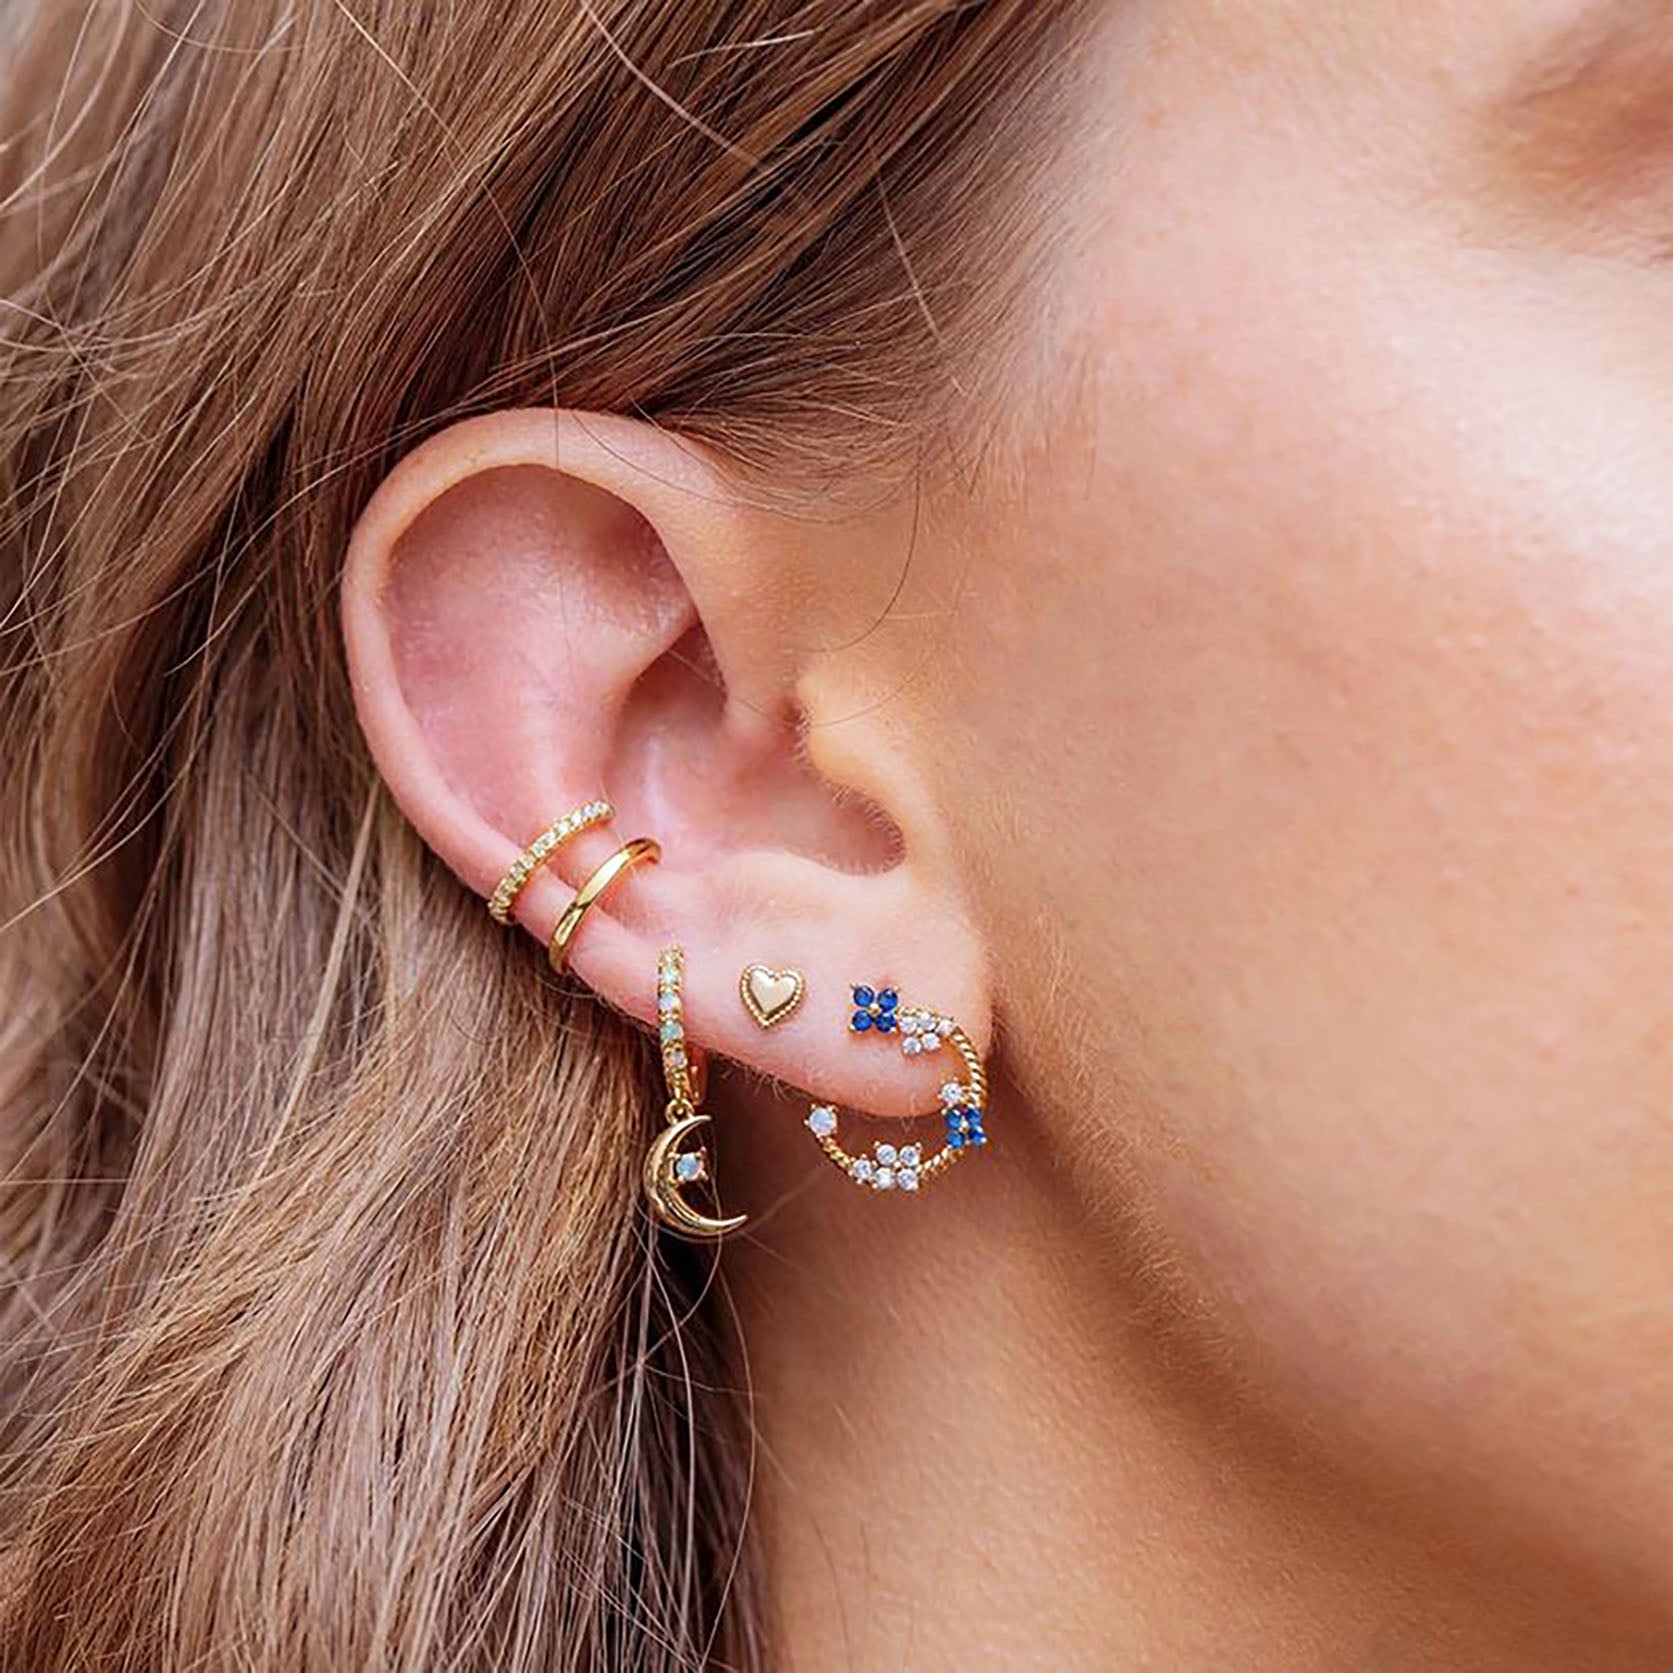 opal hoops on ear